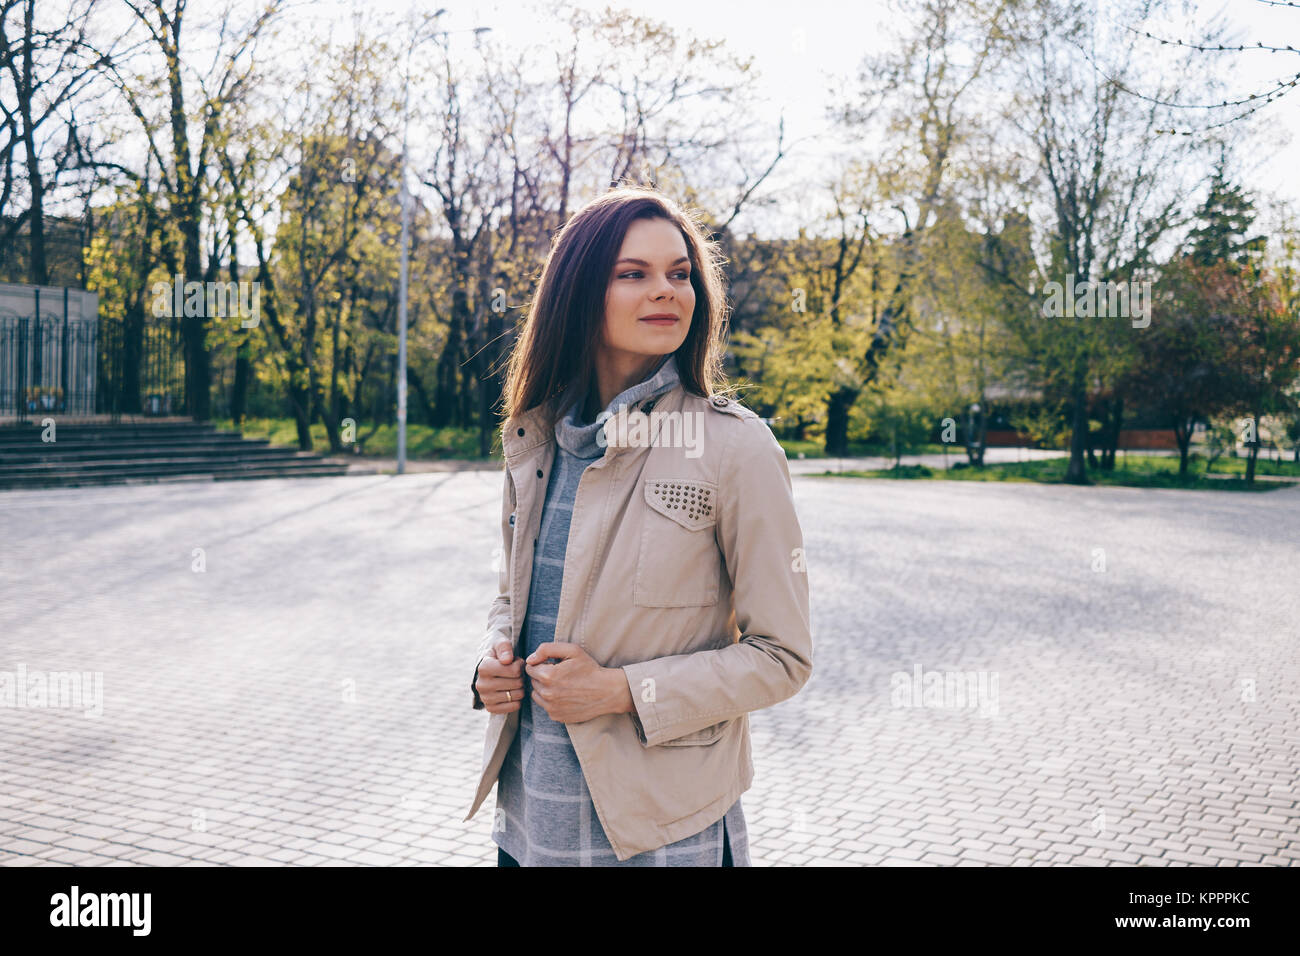 Femme svelte dans une veste beige promenades à travers le parc en automne Banque D'Images